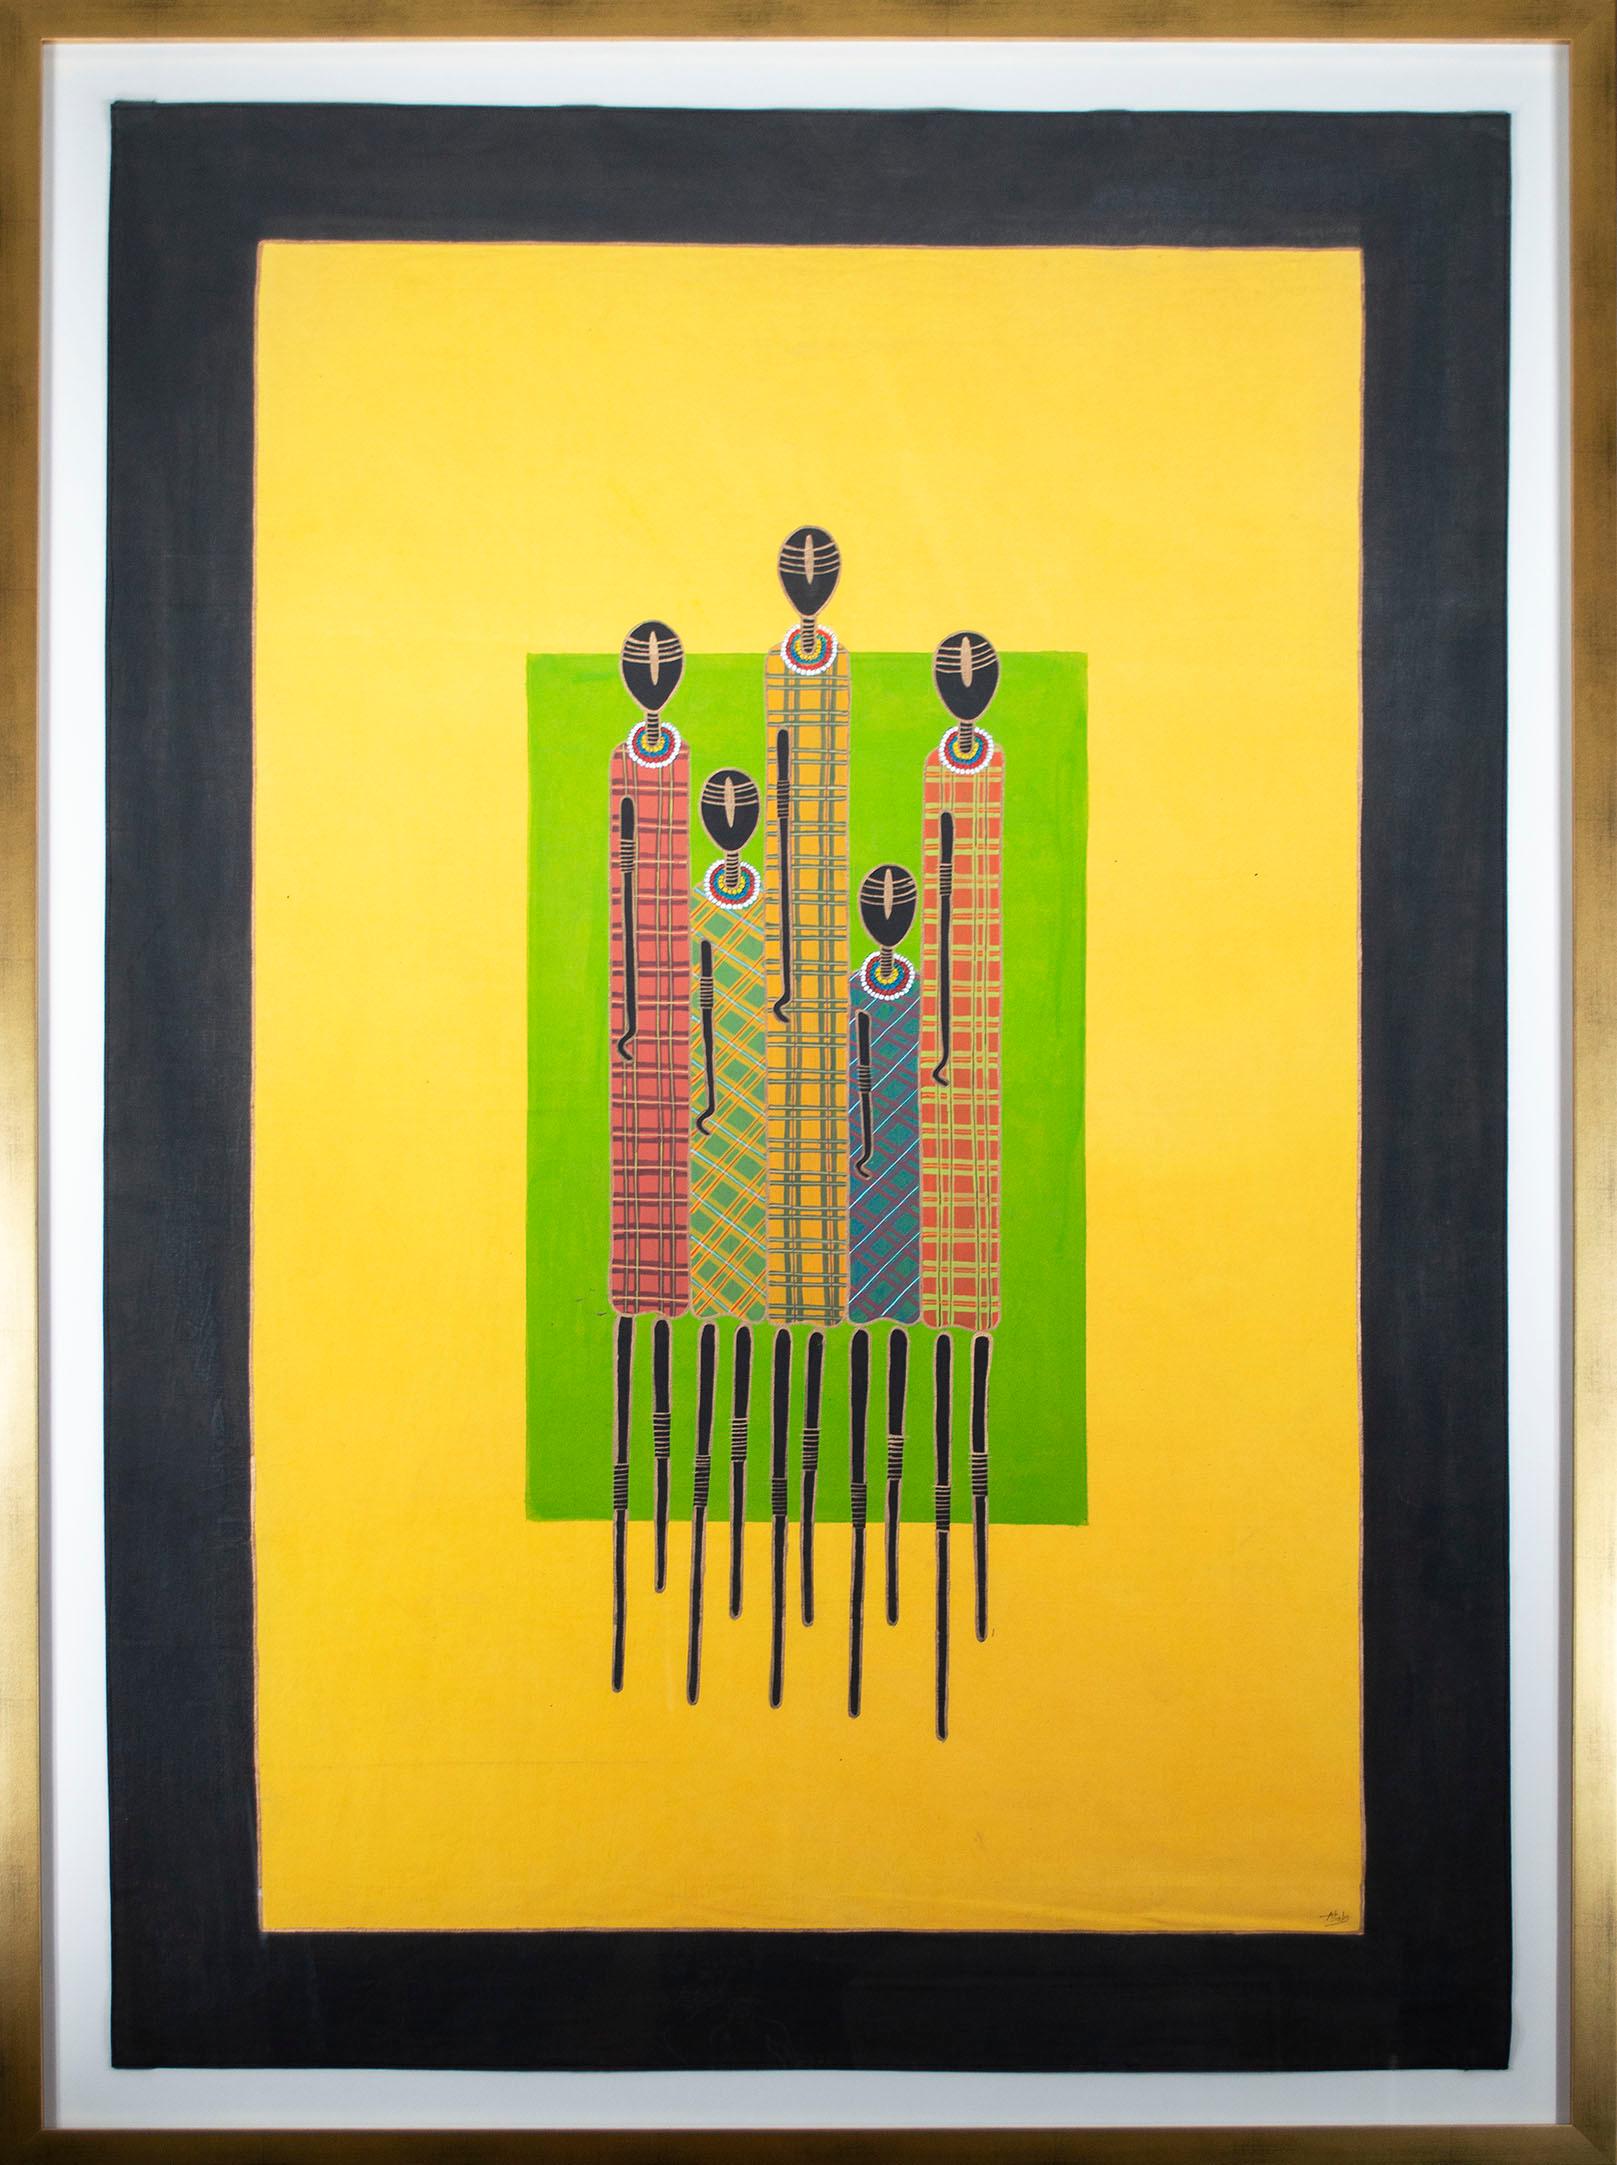 Das vorliegende Gemälde ist ein kühnes und lebendiges Werk der Künstlerin und Modedesignerin Stella Atal. Das Bild enthält fünf abstrakte, klar gezeichnete Figuren vor hellen grünen und gelben Feldern. Die Figuren, die Jäger darstellen, sind